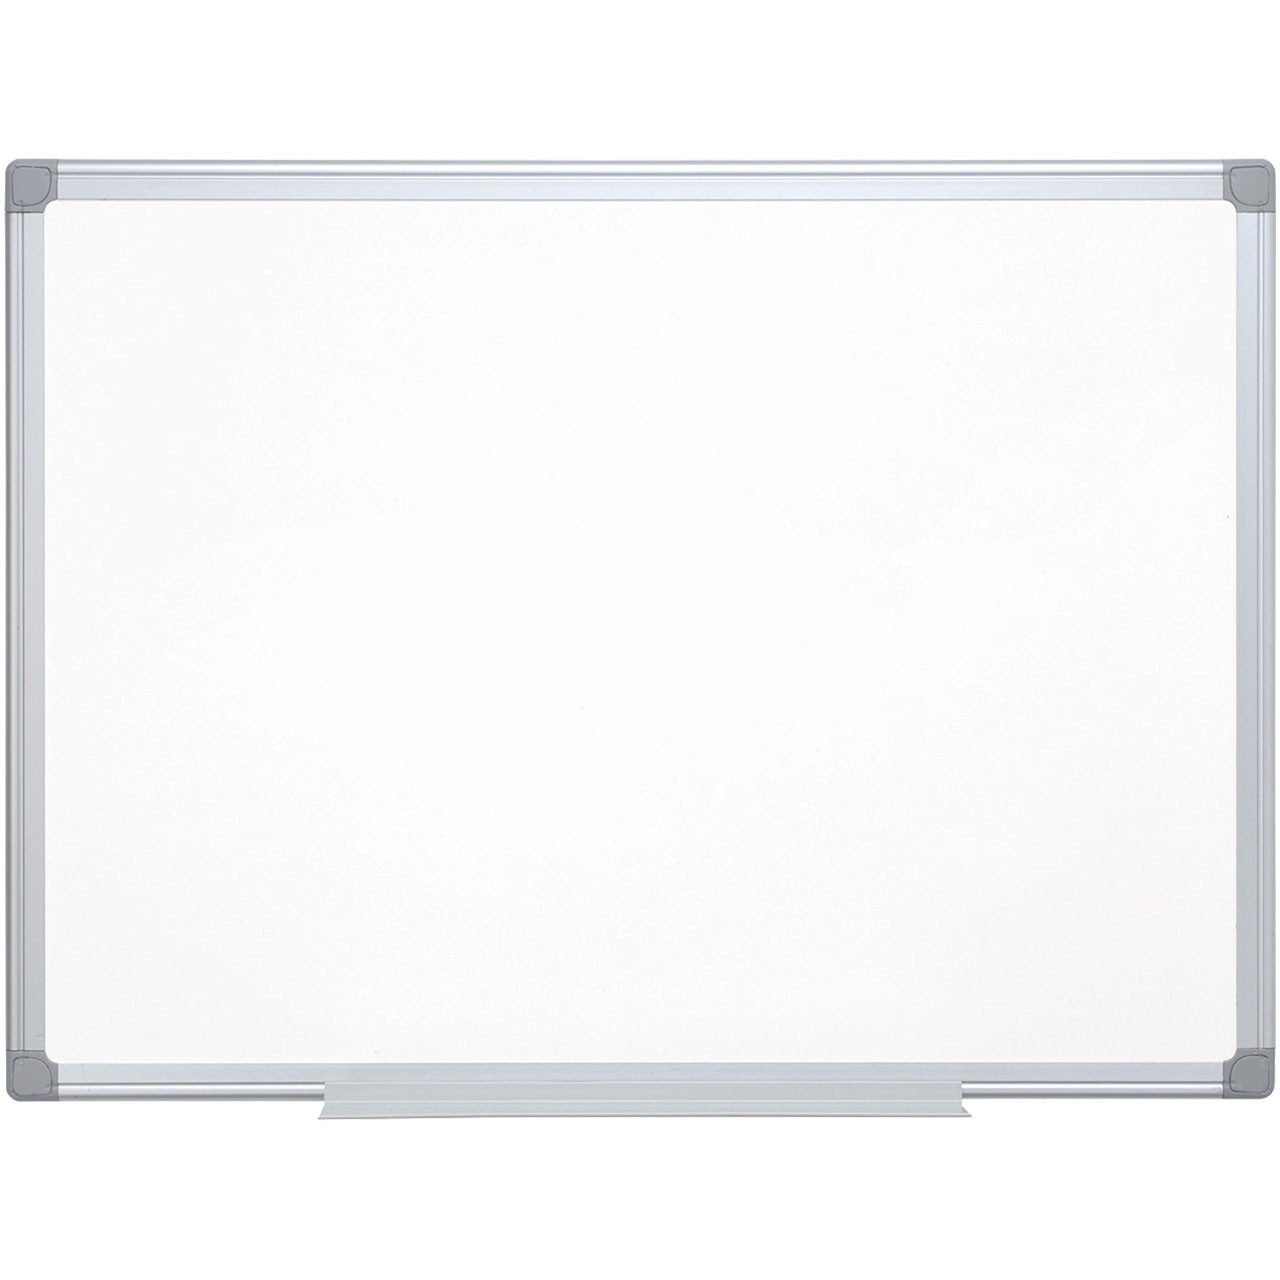 Q-connect lakeret whiteboardtavle 180x120cm